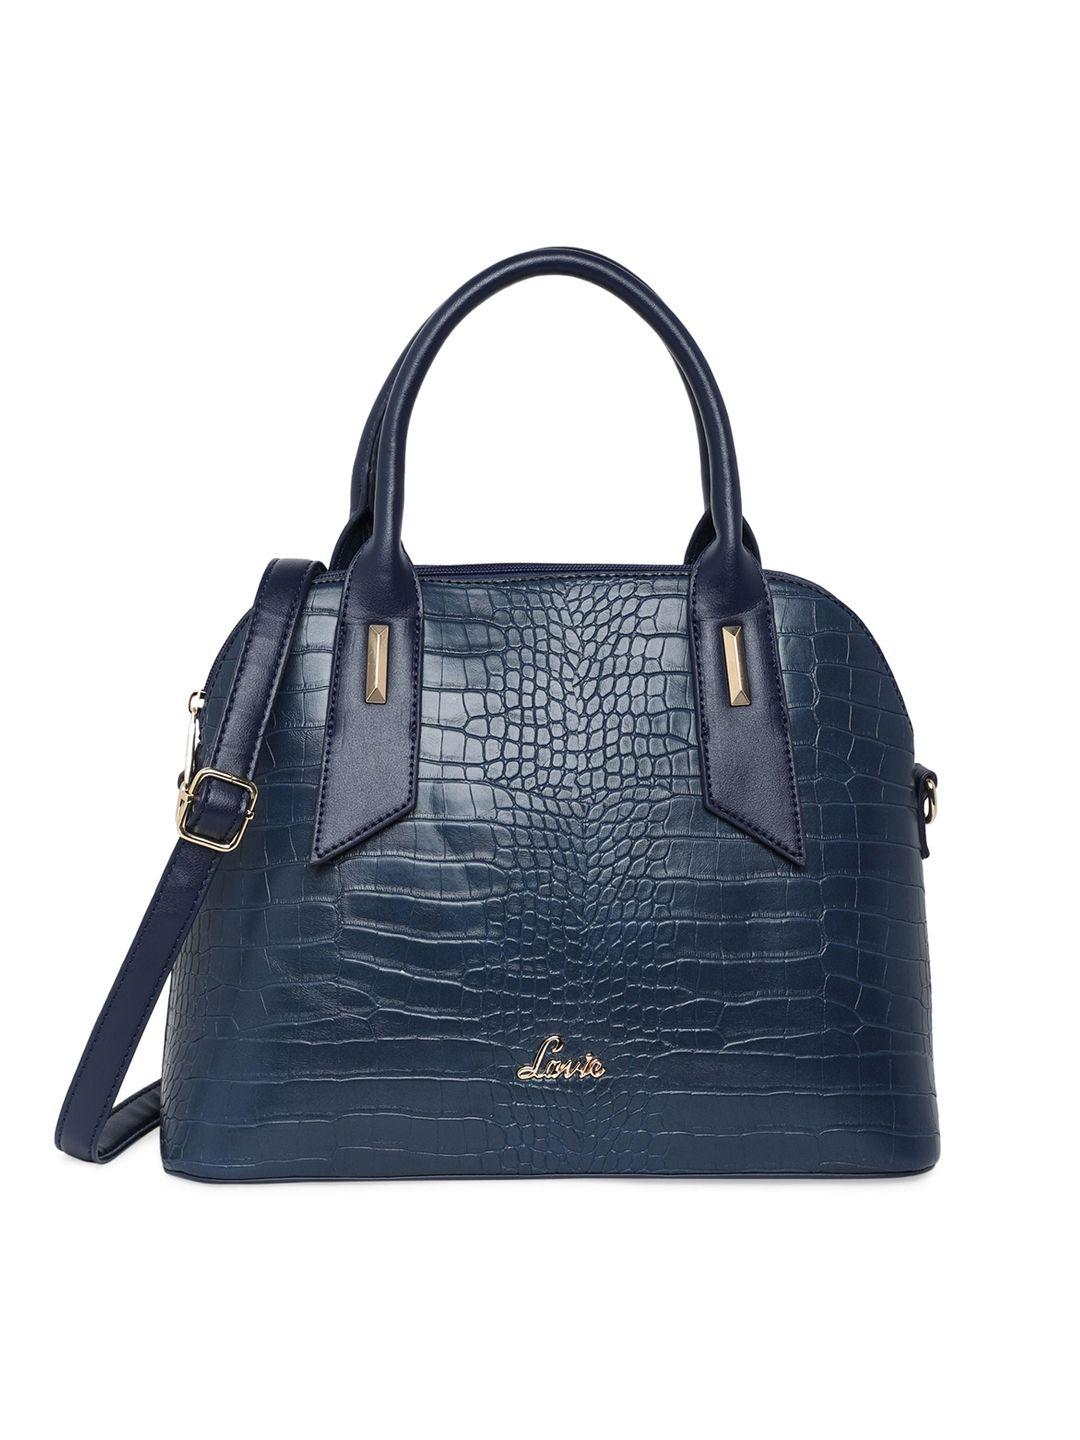 lavie navy blue textured structured handheld bag